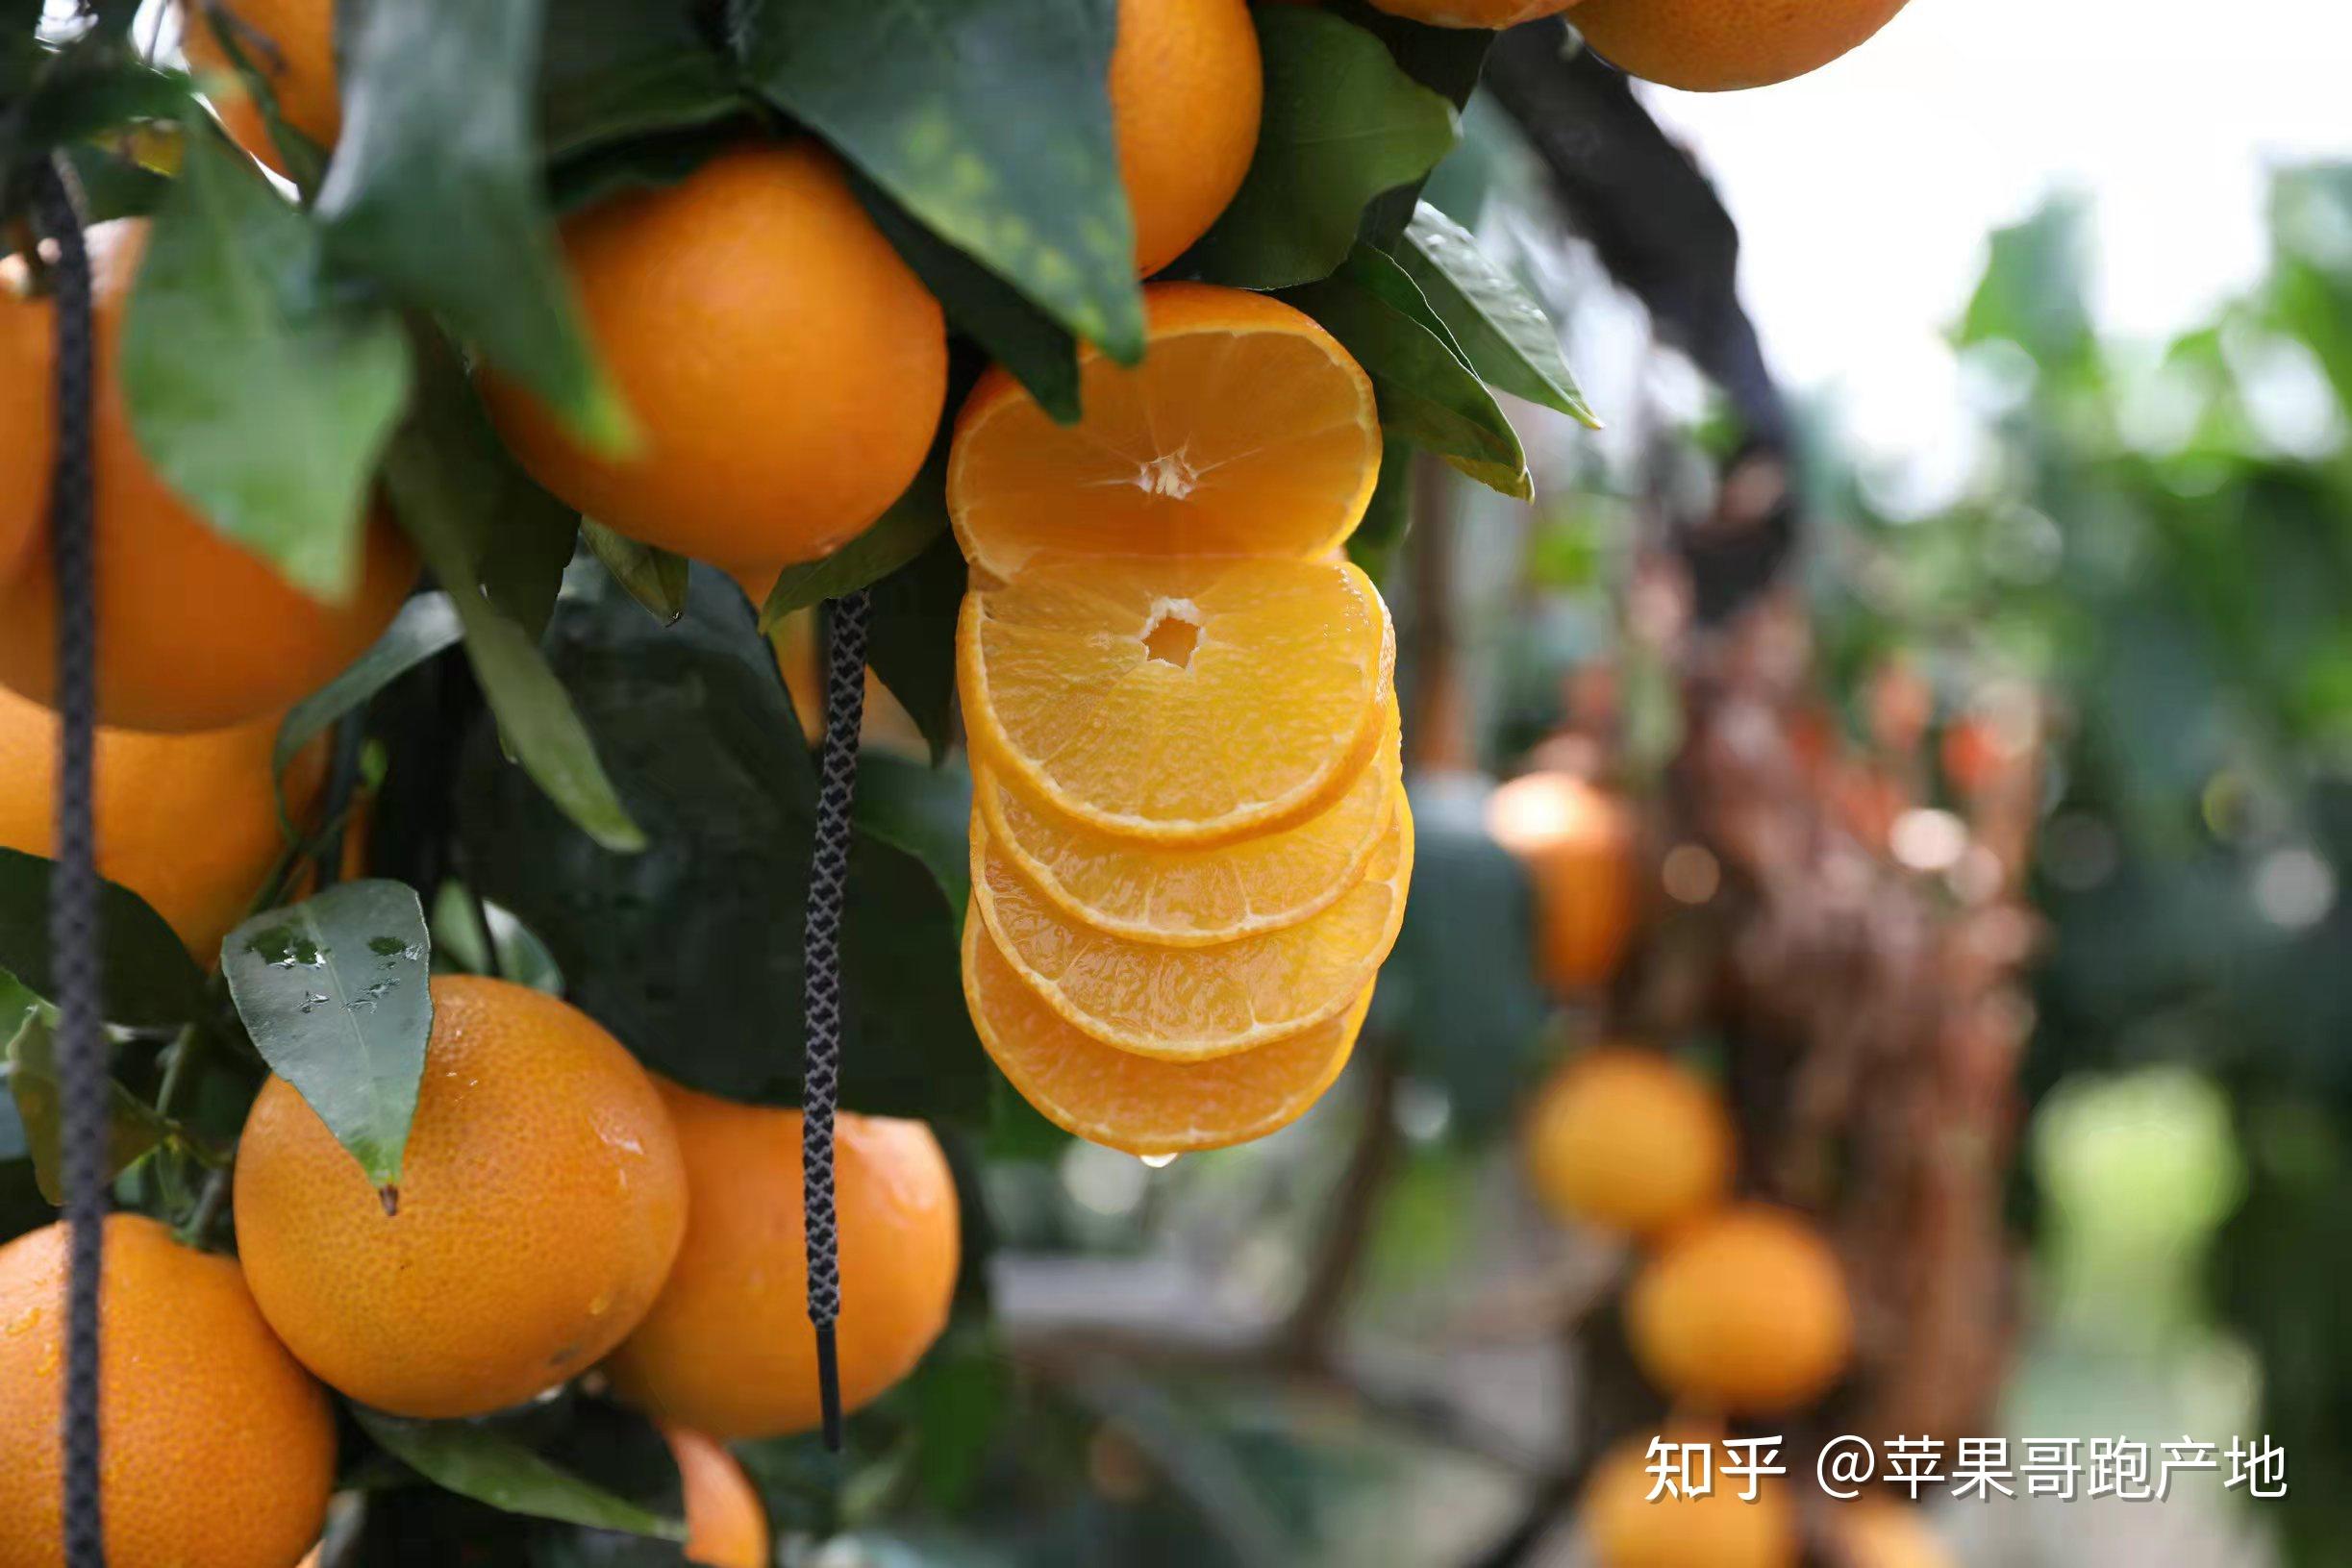 2021年象山红美人柑橘桔子多少钱一斤?产地是哪里?哪里最出名? 